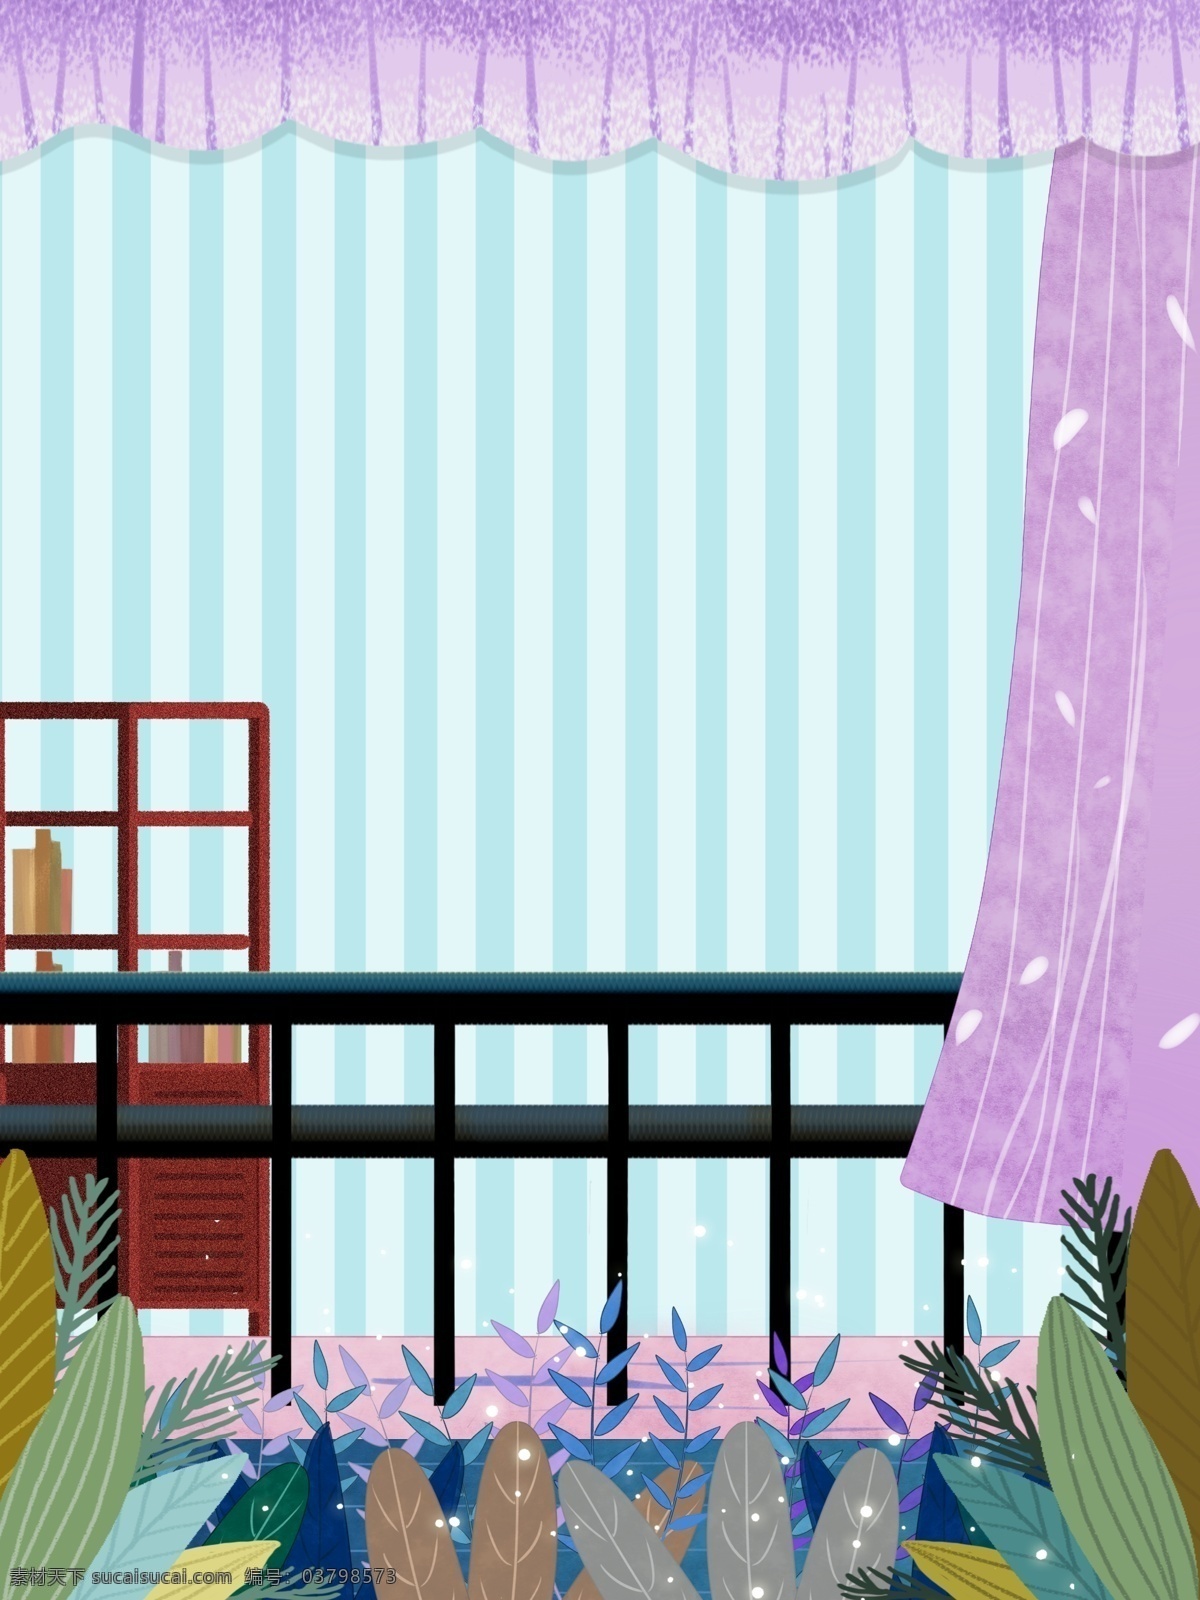 小 清新 温馨 室内 卧室 背景 卡通 彩色 创意 装饰 设计背景 海报背景 简约 图案